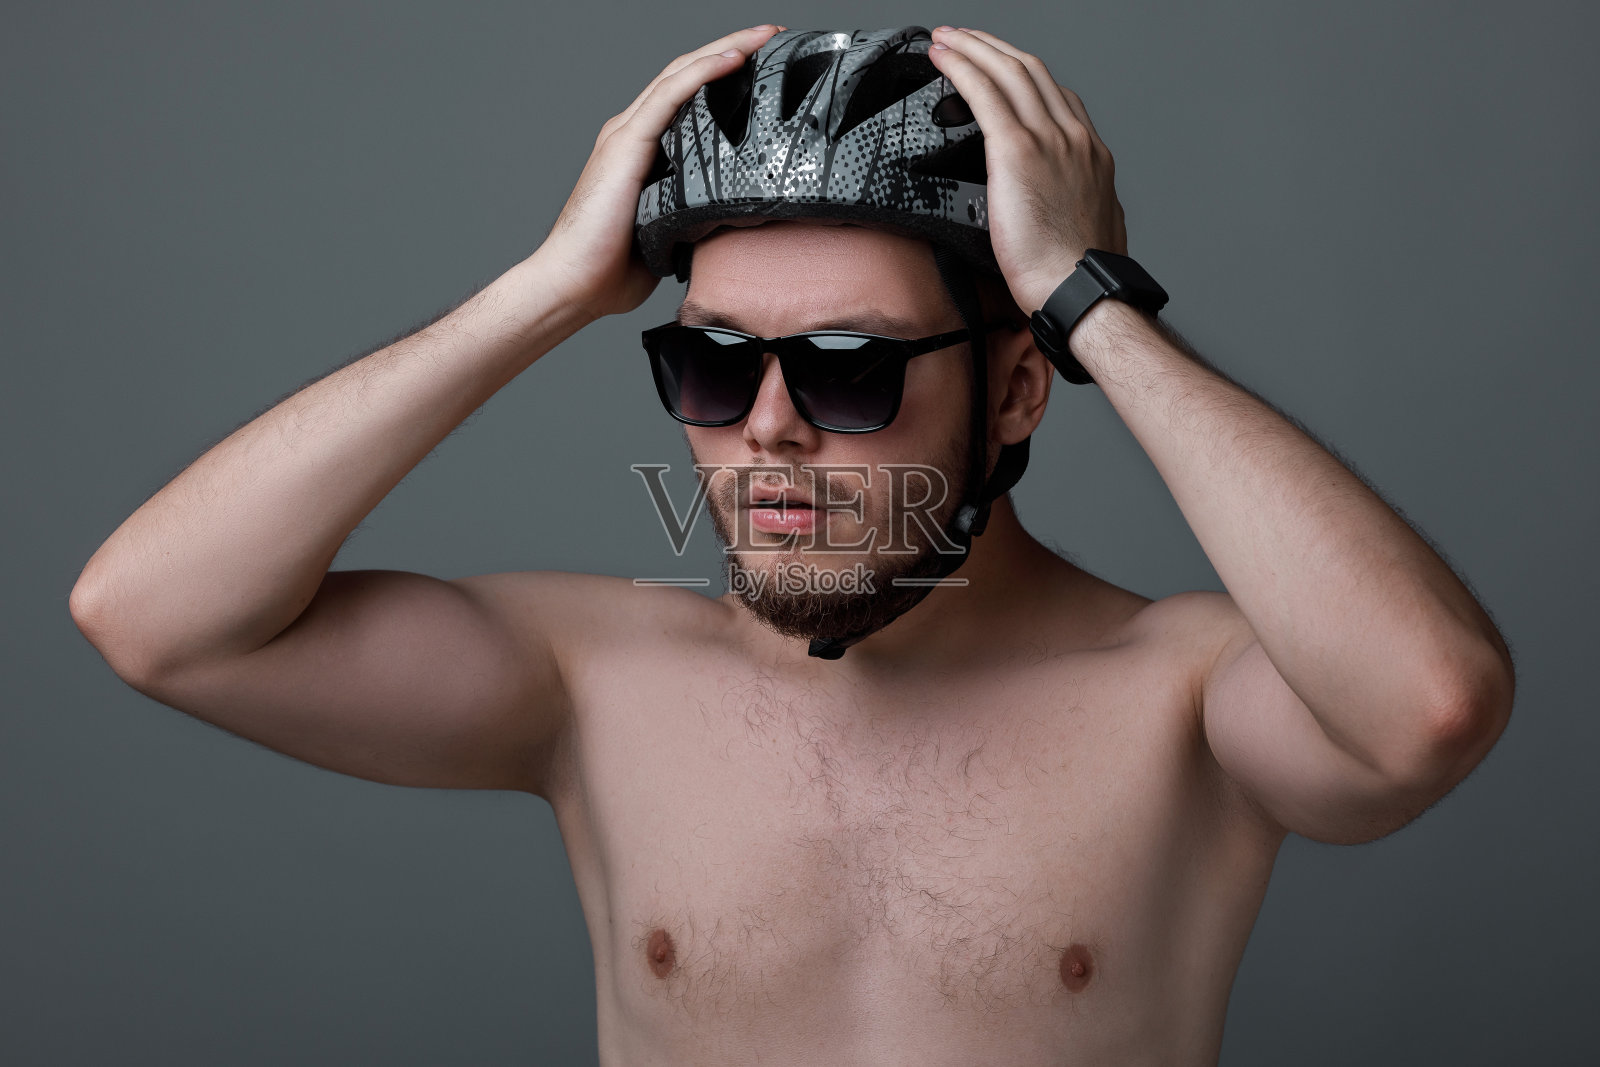 年轻的自行车手的滑稽肖像照片摄影图片